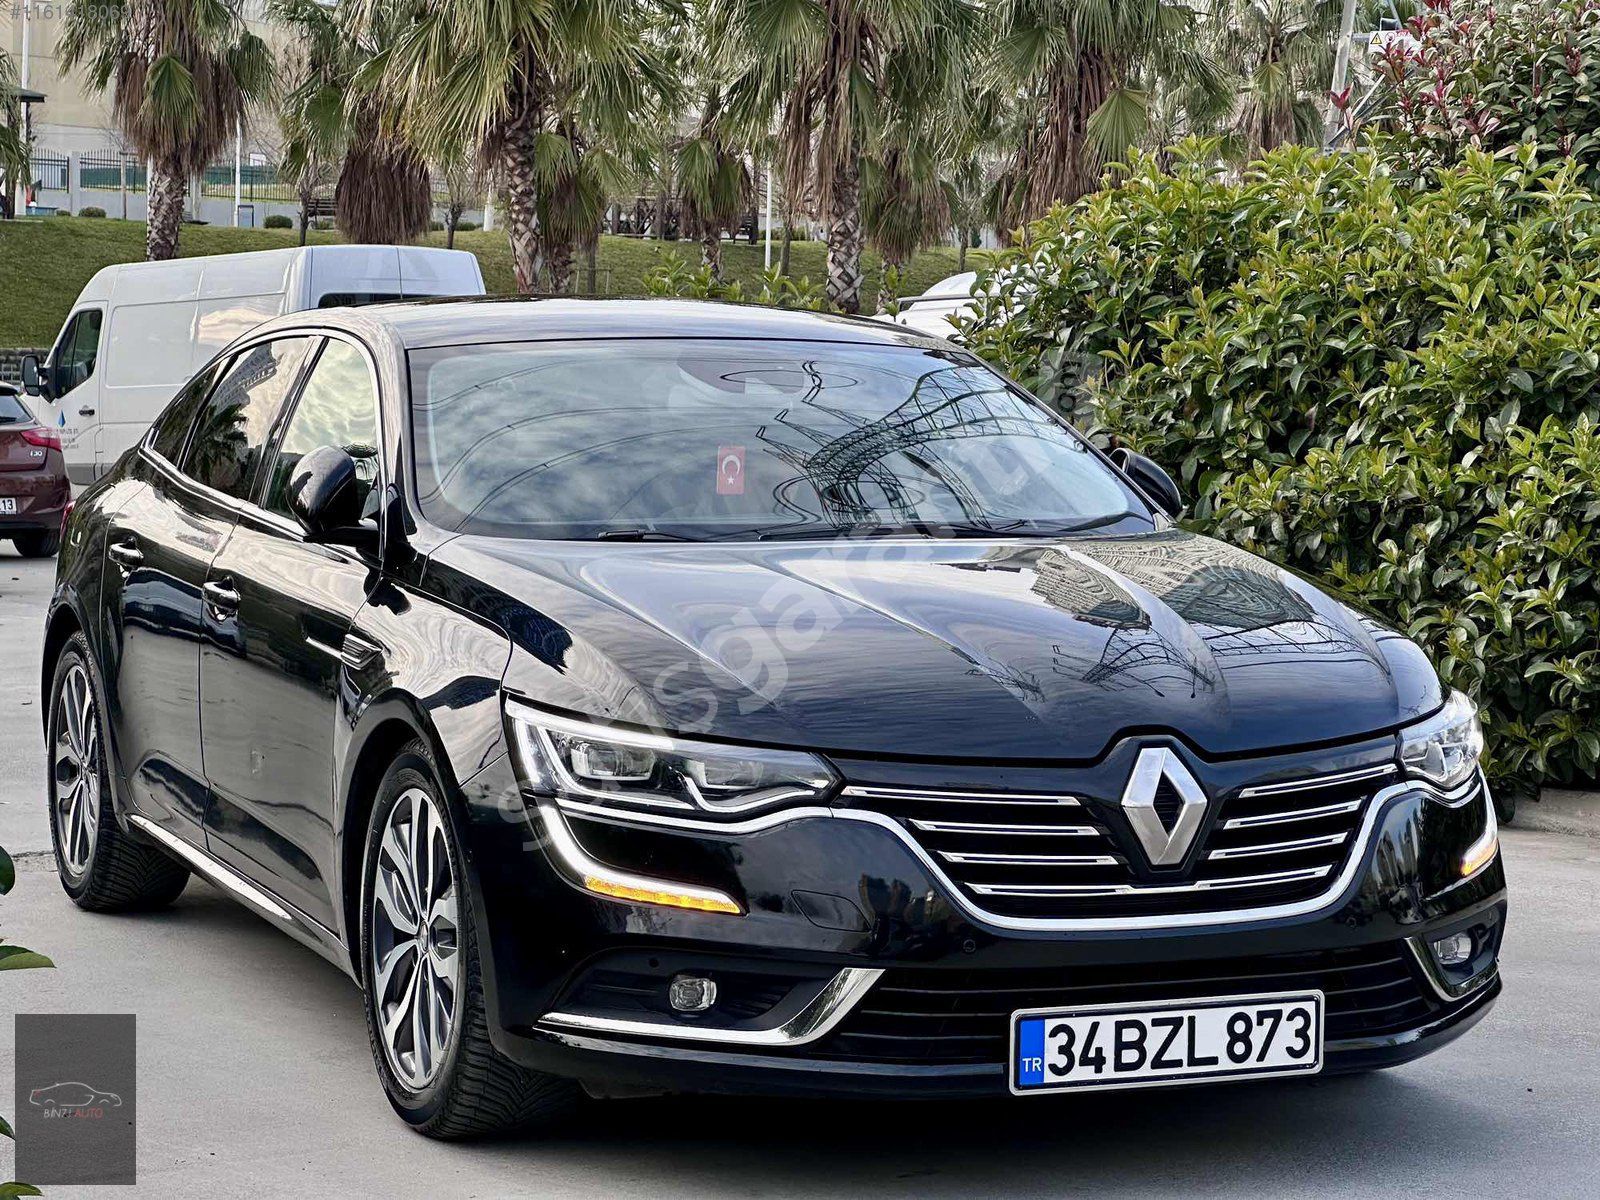 Bin71 Auto'dan 2018 Renault Talisman 1.6 dCi İcon Düşük Km